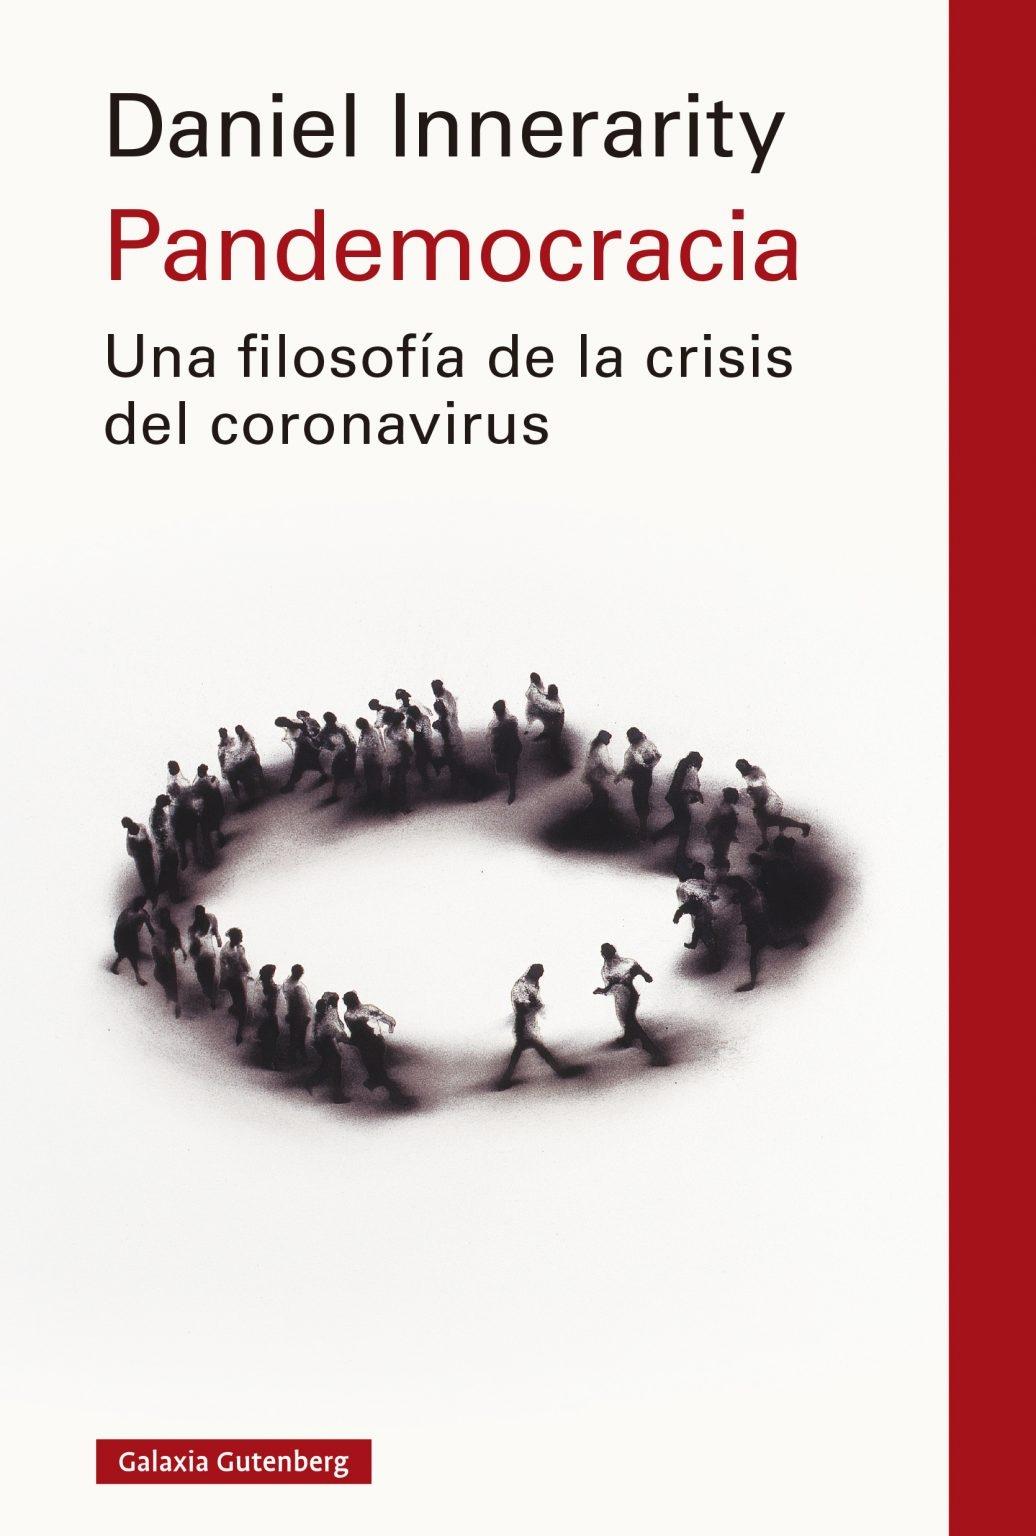 Pandemocracia "Una filosofía de la crisis del coronavirus"